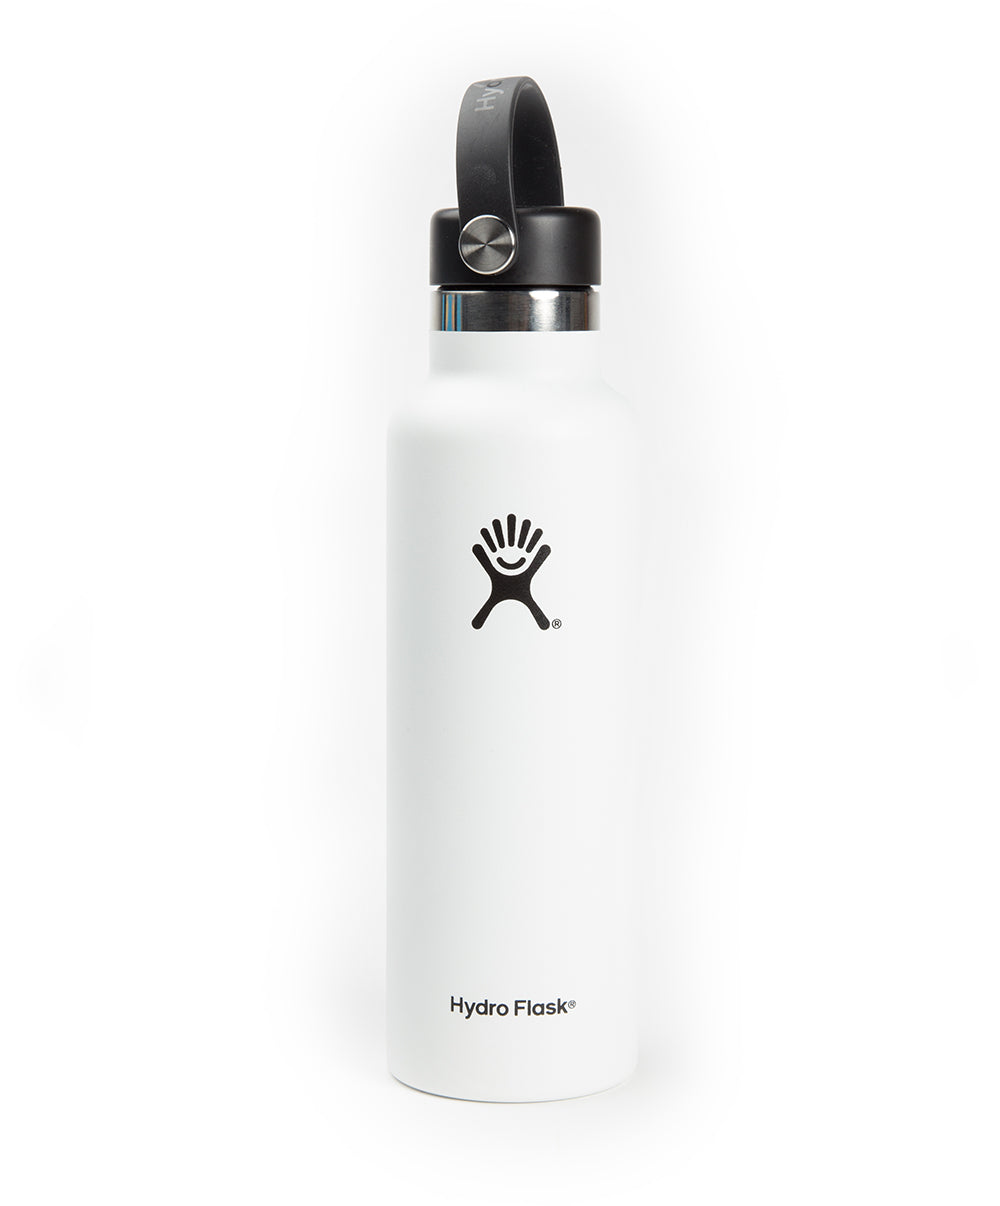 Hydro Flask Black Water Bottle - 21 Oz.